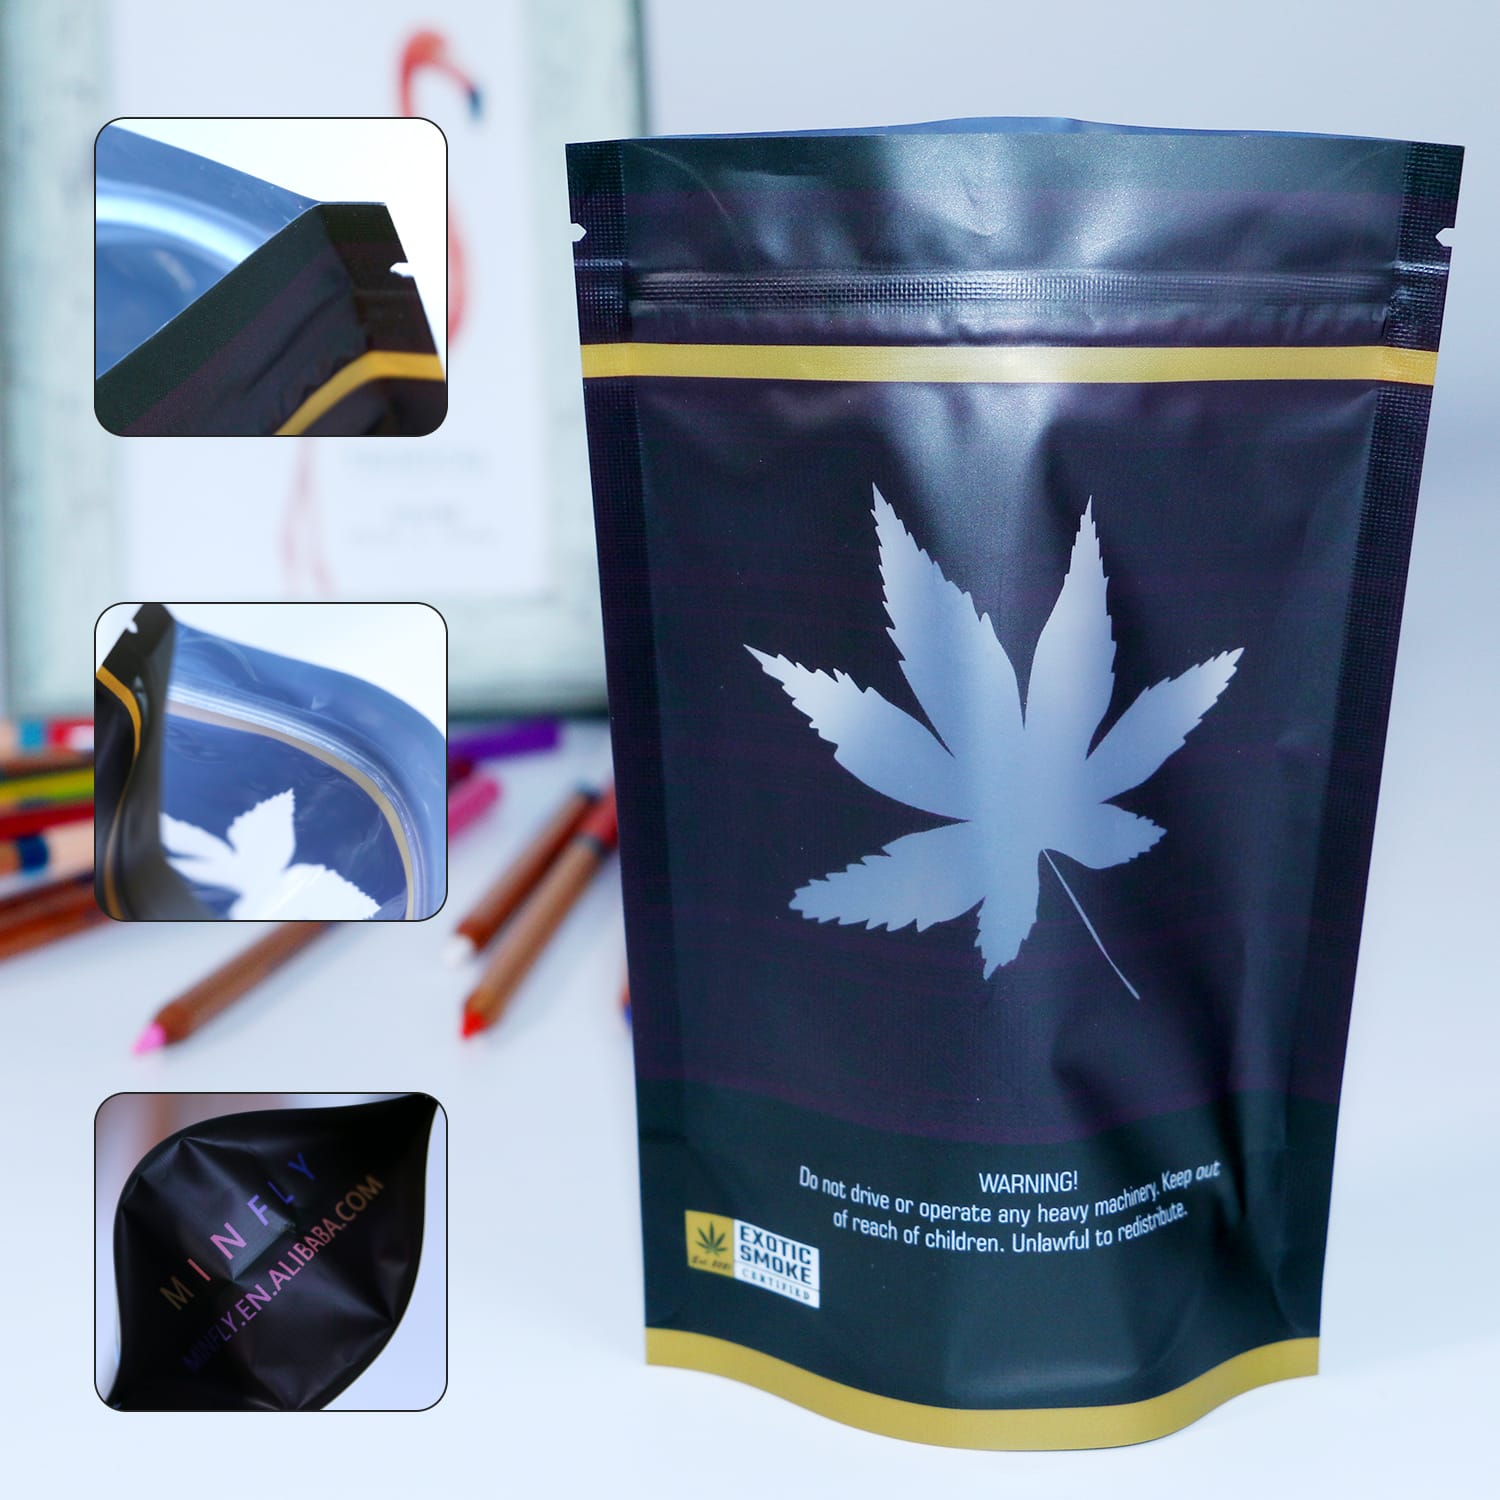 စိတ်ကြိုက် ဆေးခြောက် တစ်မျိုးတည်း ထုပ်ပိုးသည့် အိတ်များ Weed Marijuana baggies